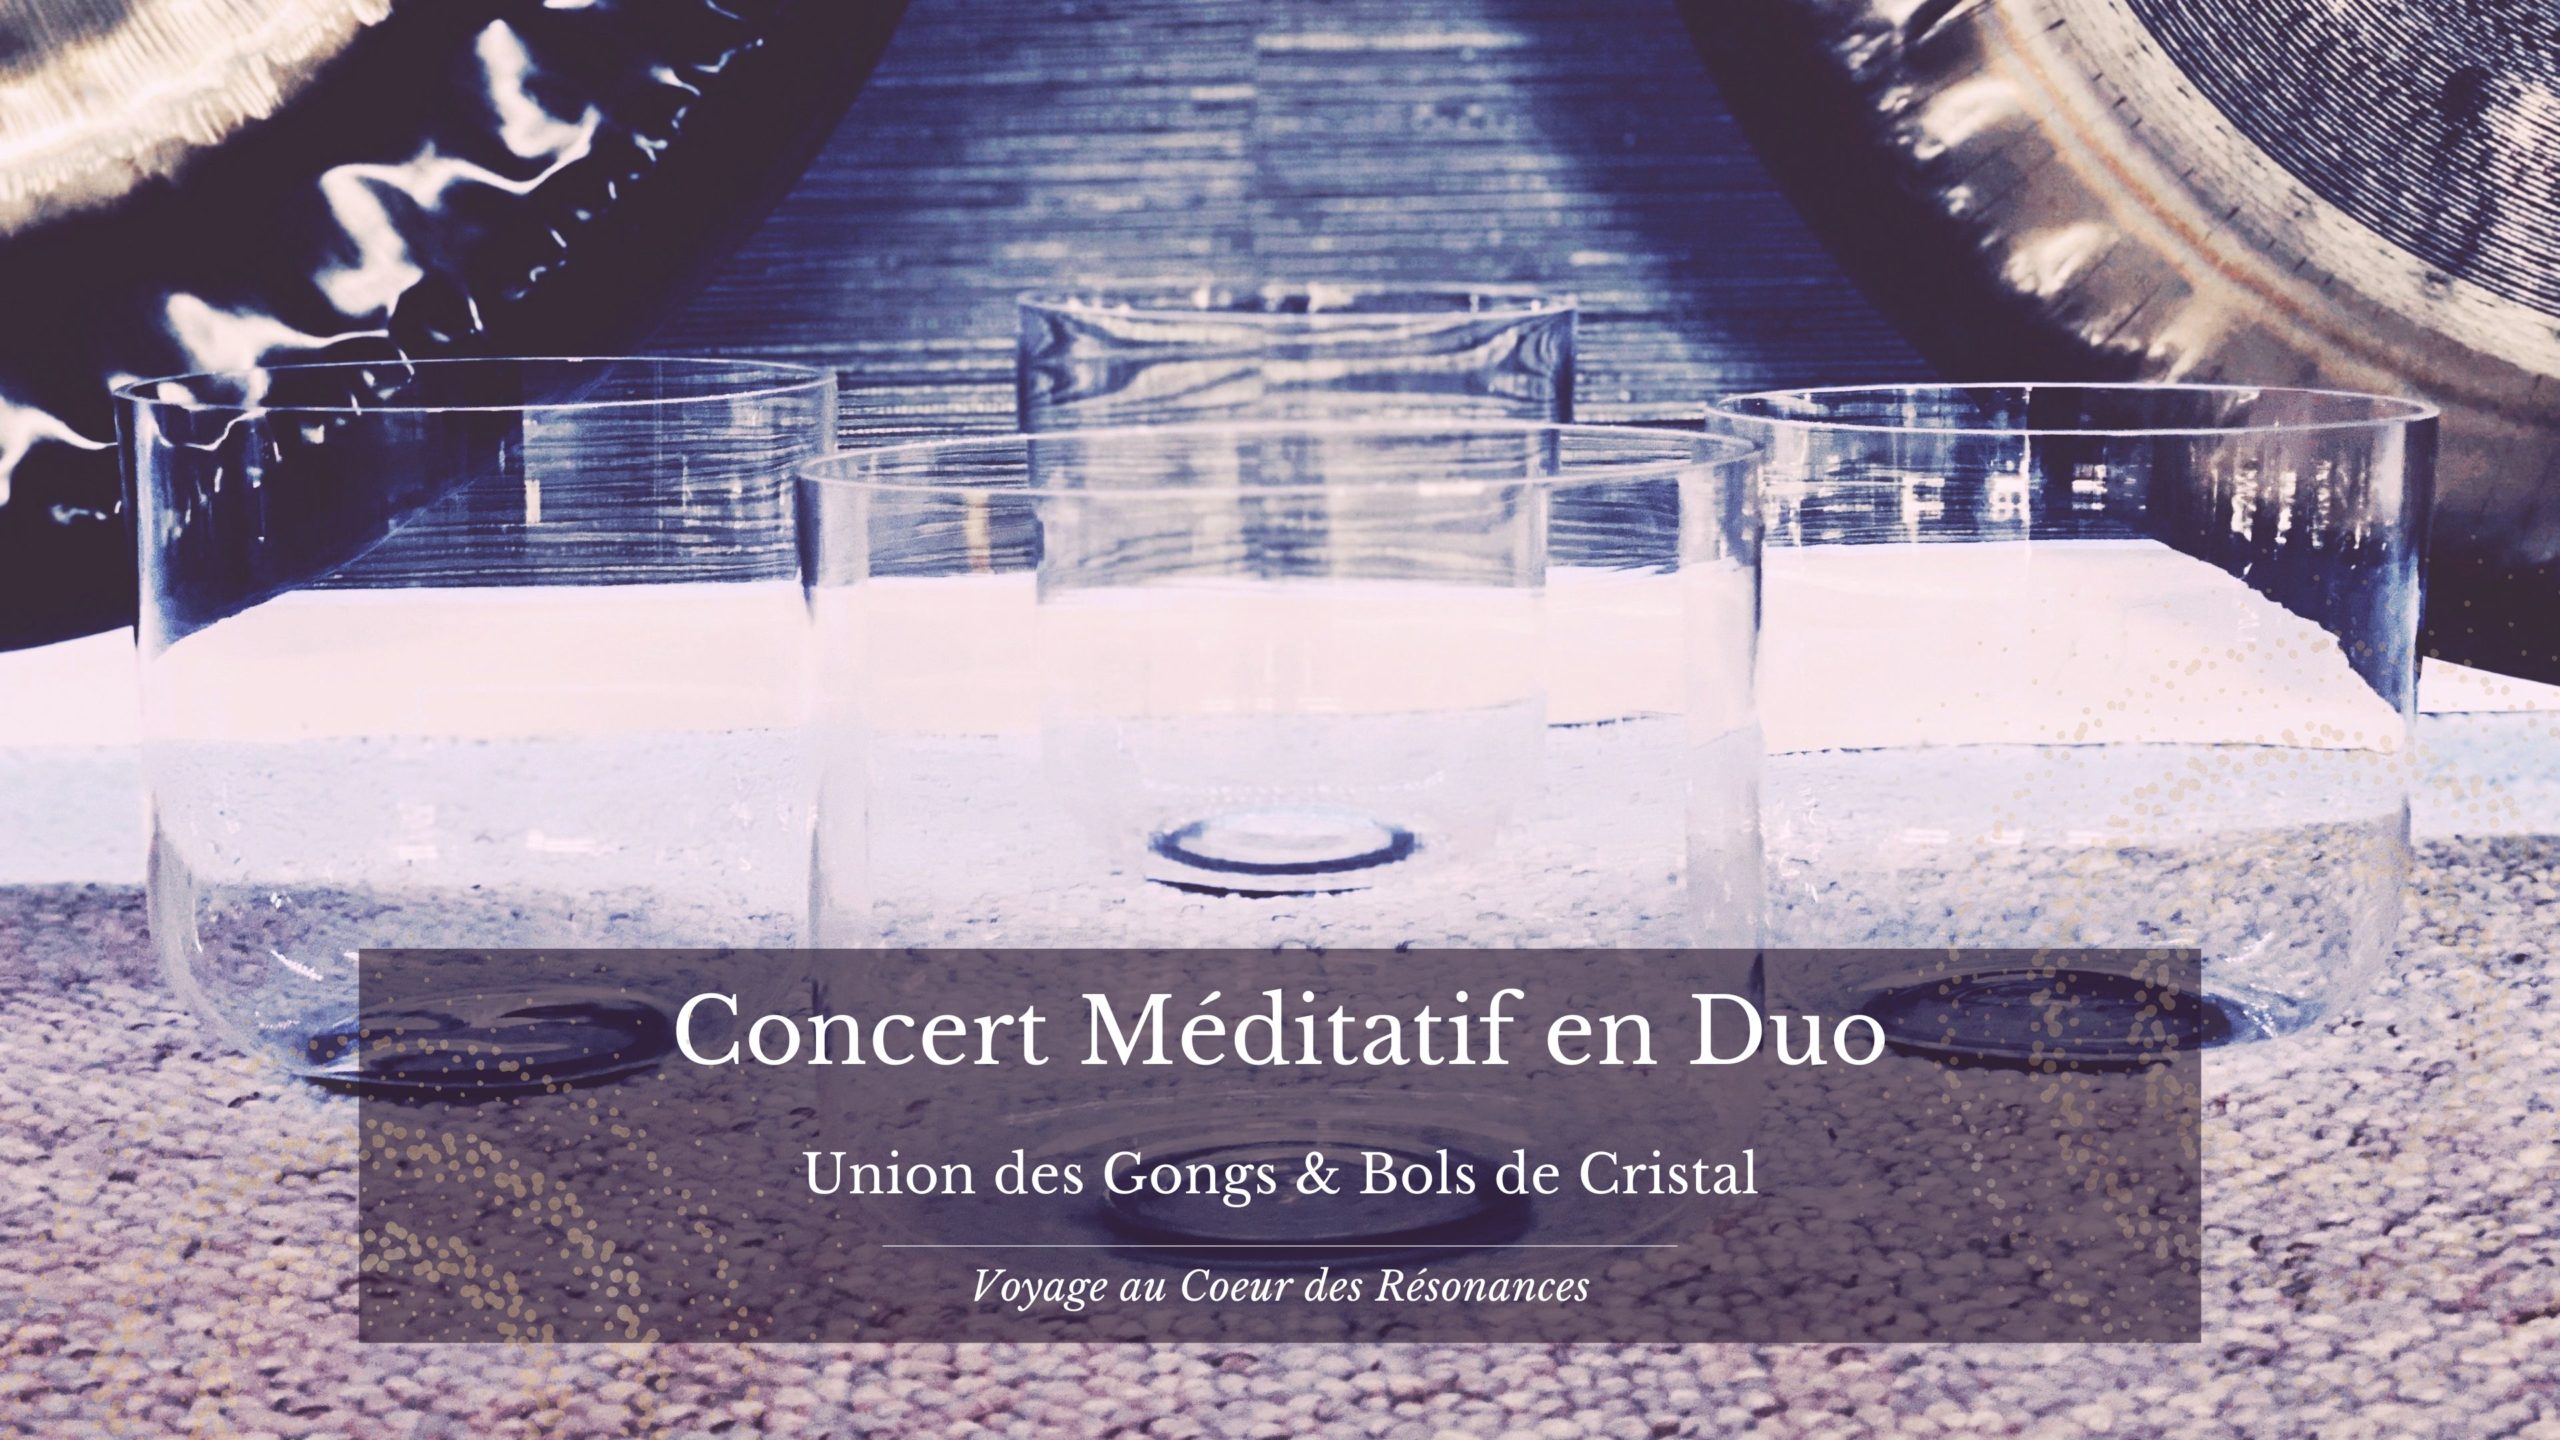 Concert Méditatif en Duo " union des Gongs et Bols de cristal"